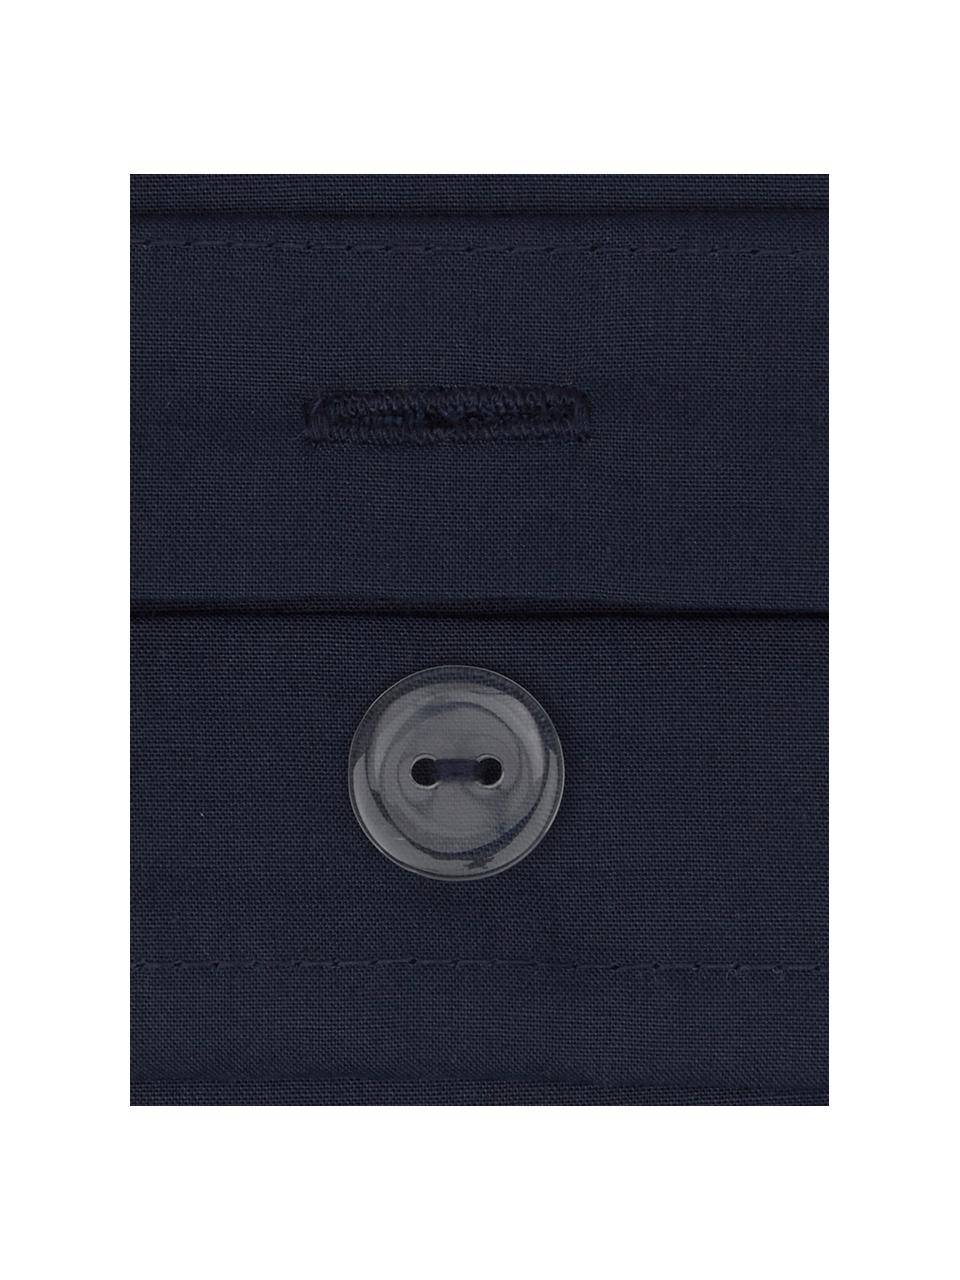 Parure copripiumino in percalle Elsie, Tessuto: percalle Densità del filo, Blu scuro, Larg. 255 x Lung. 200 cm, 3 pz